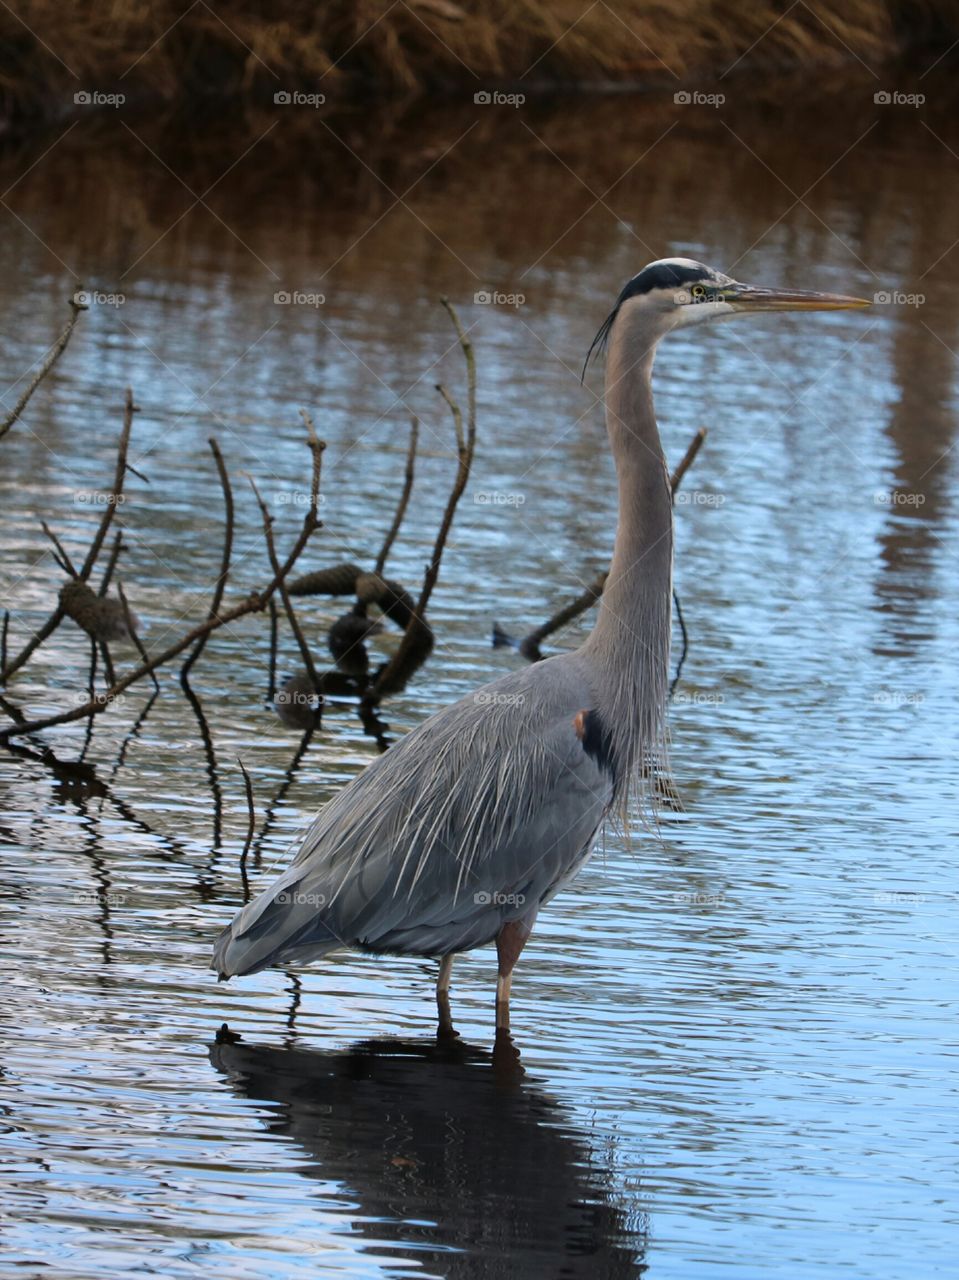 Blue heron standing in water